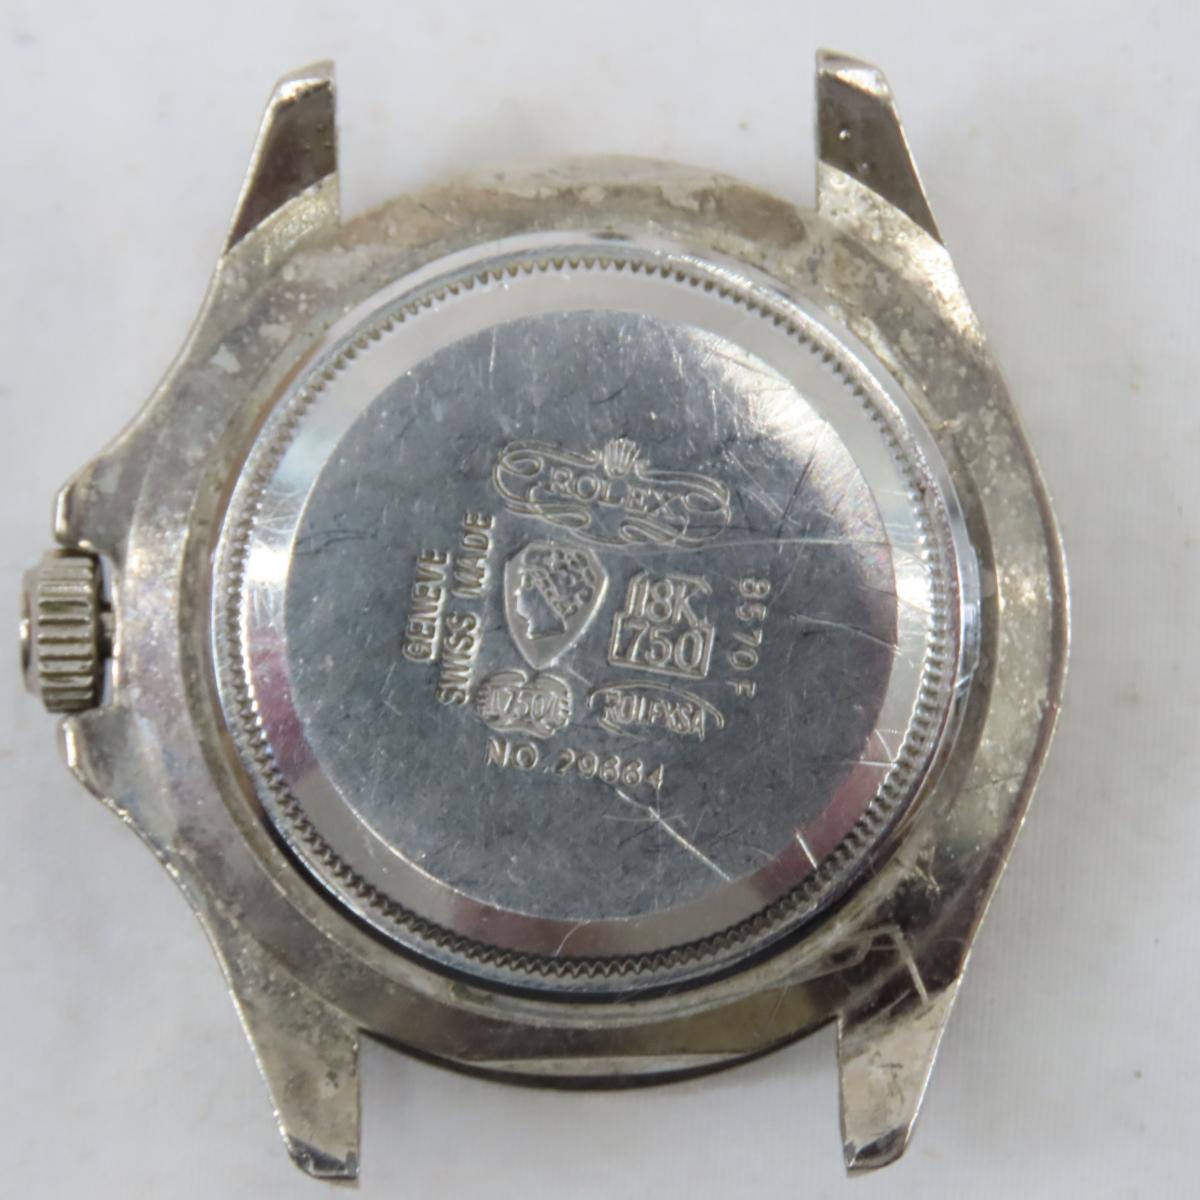 Vintage Wrist Watches & Modern Pocket Watches